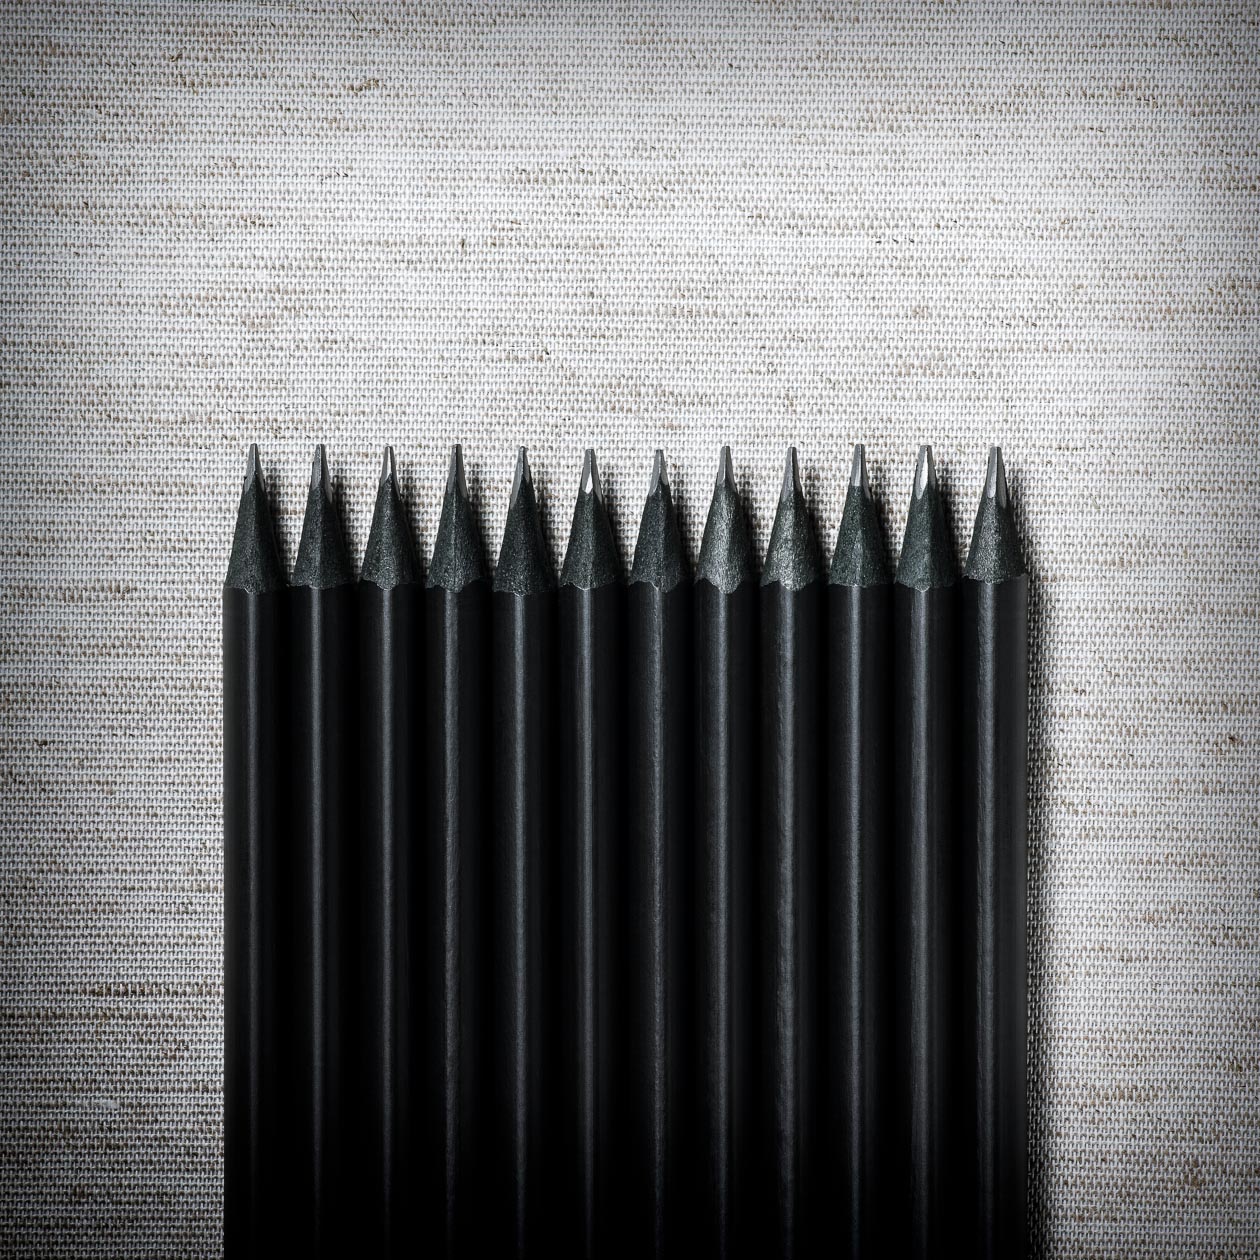 Pencils Concept Uniform Parity